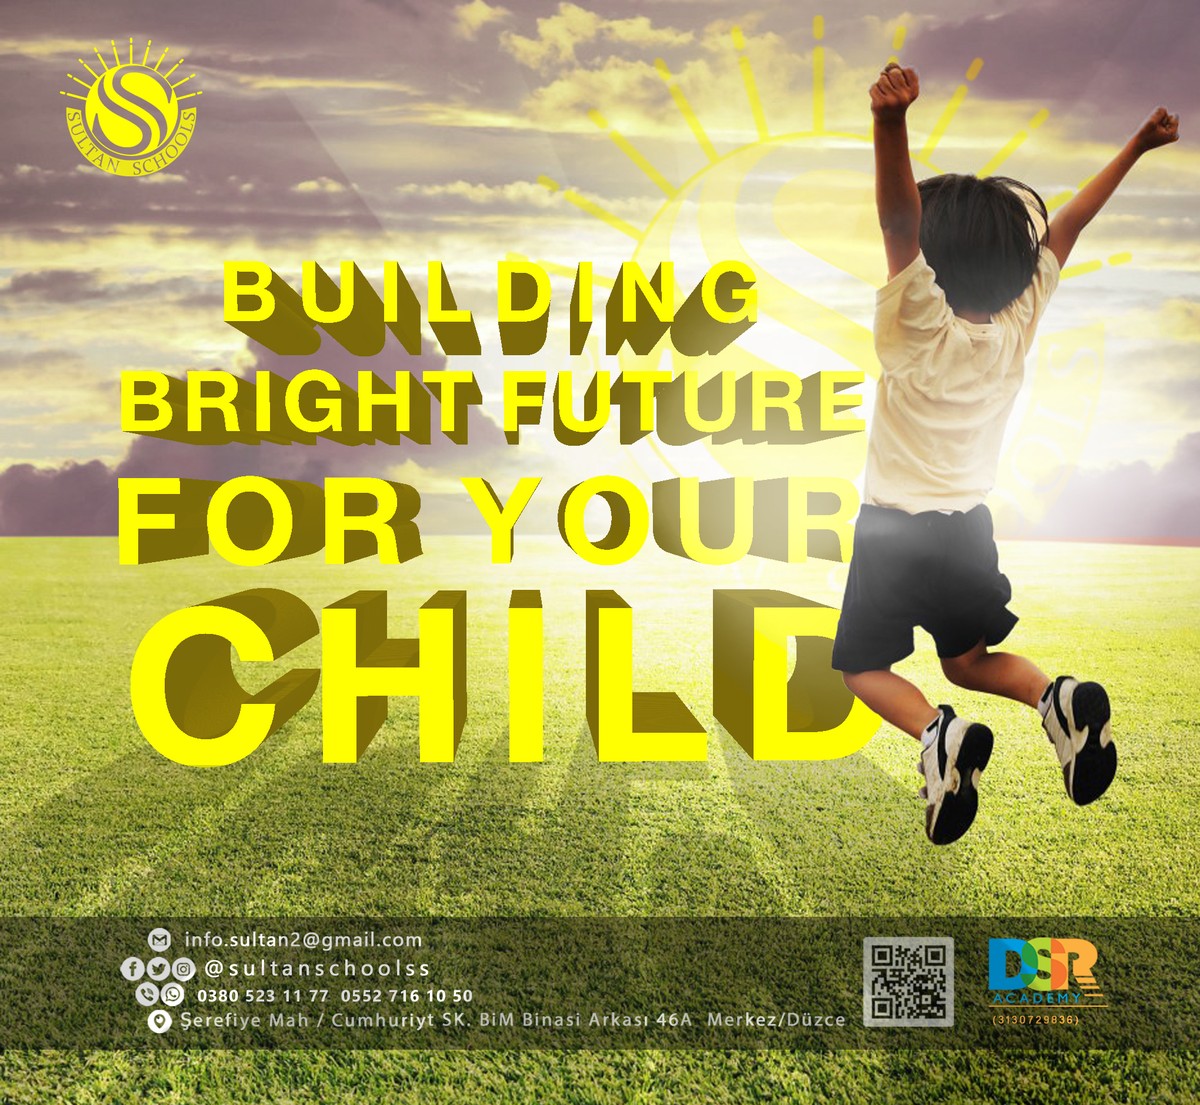 Building_bright_future